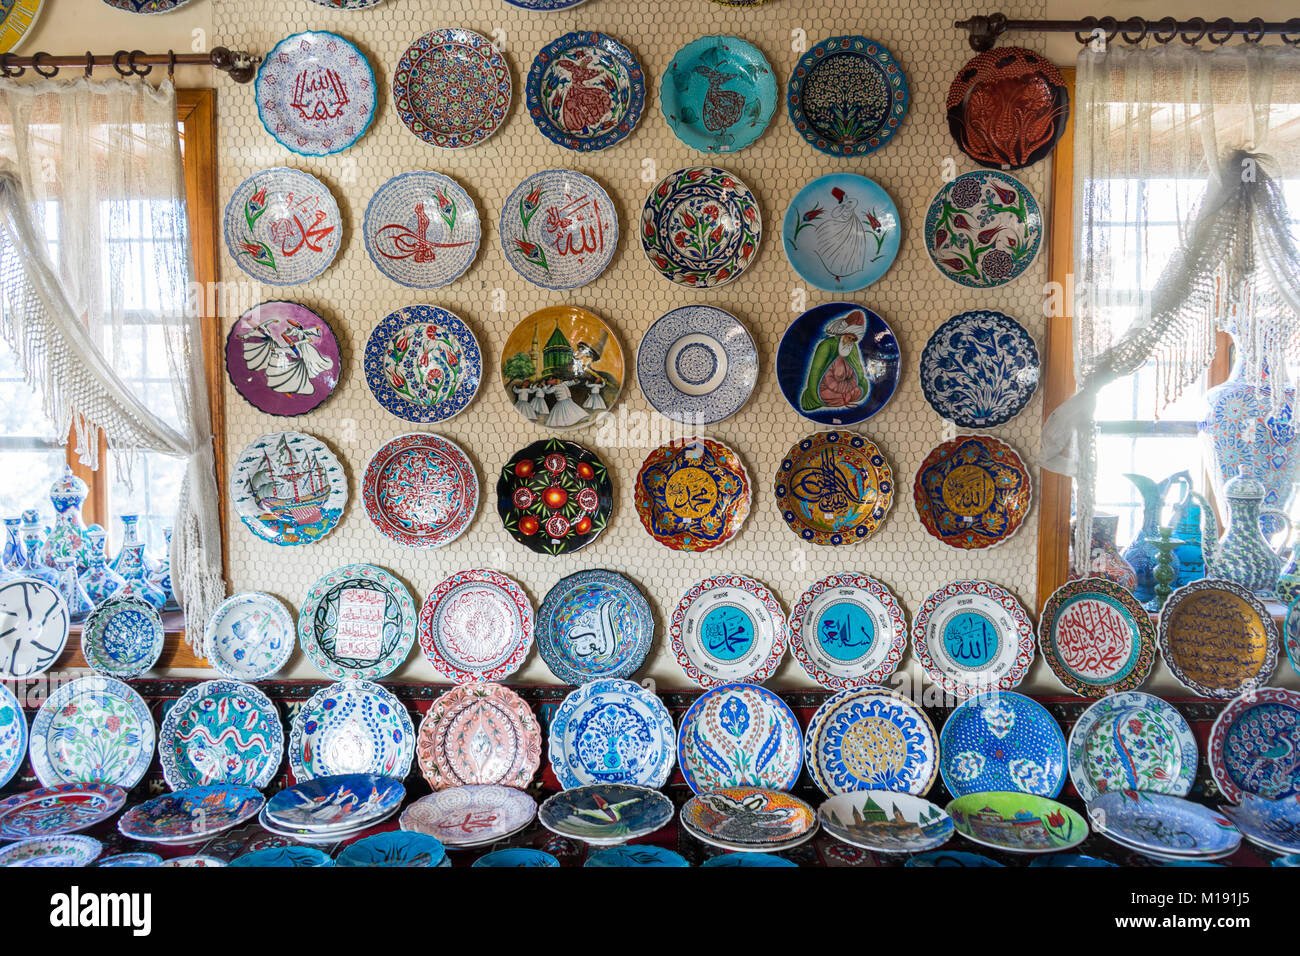 Souvenirs de céramique colorée dans le mur, Konya - Turquie Banque D'Images